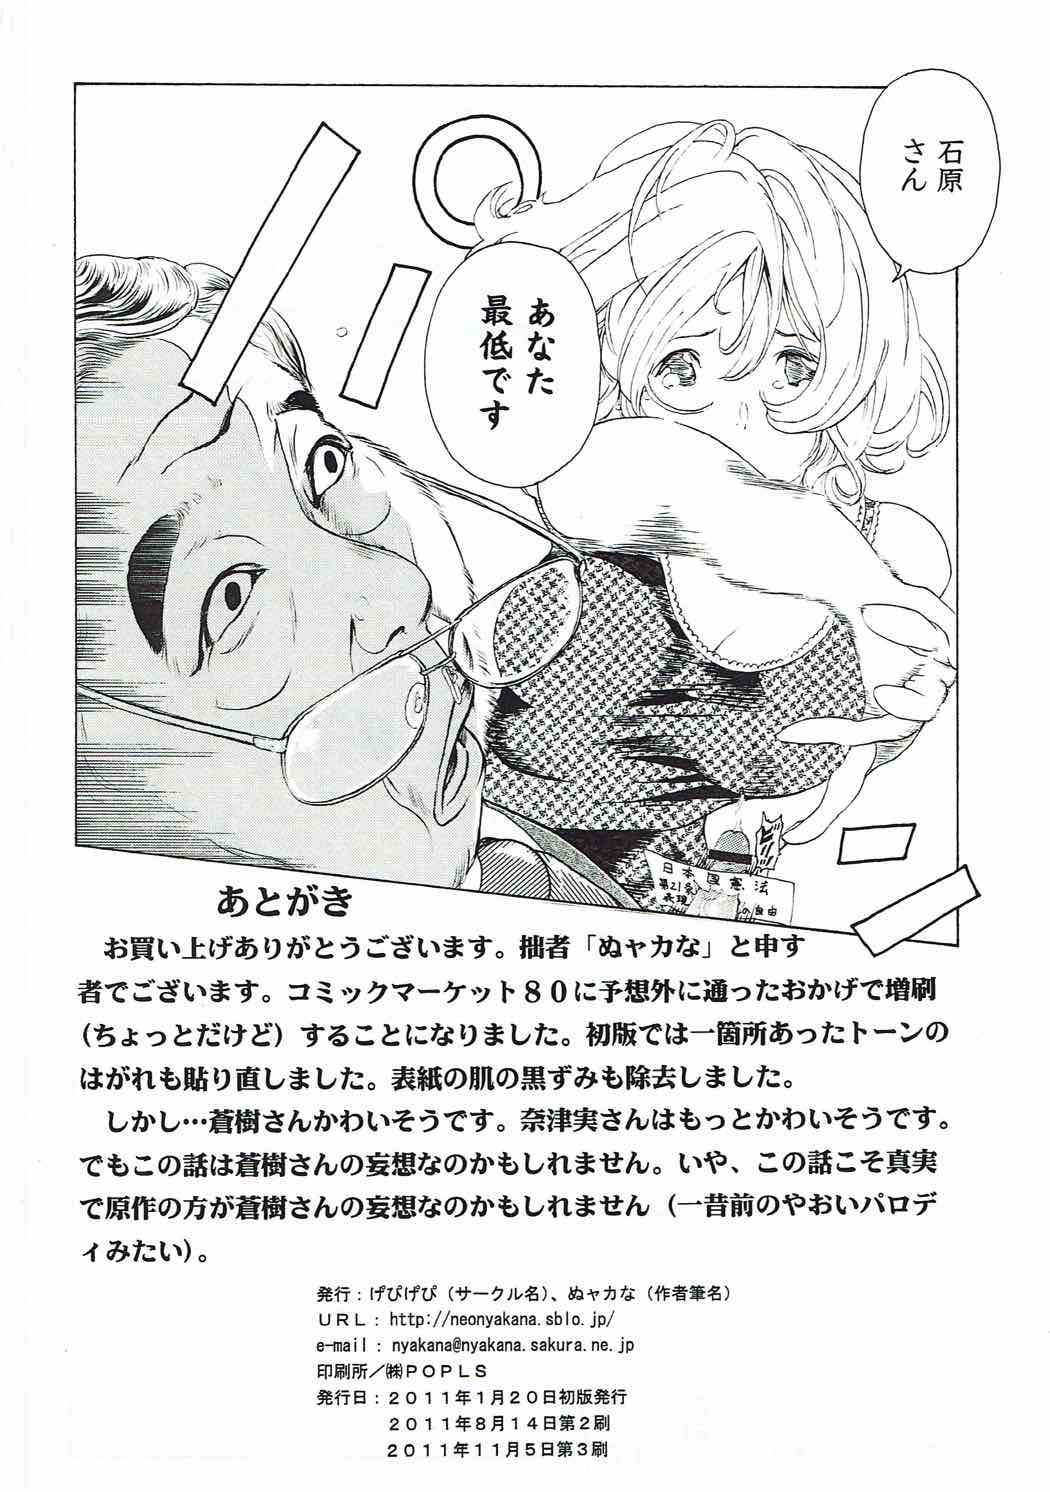 [け゜ぴけ゜ぴ (ぬャカな)] MANKOKU漫画家(とアシスタント)残酷物語 (バクマン。)